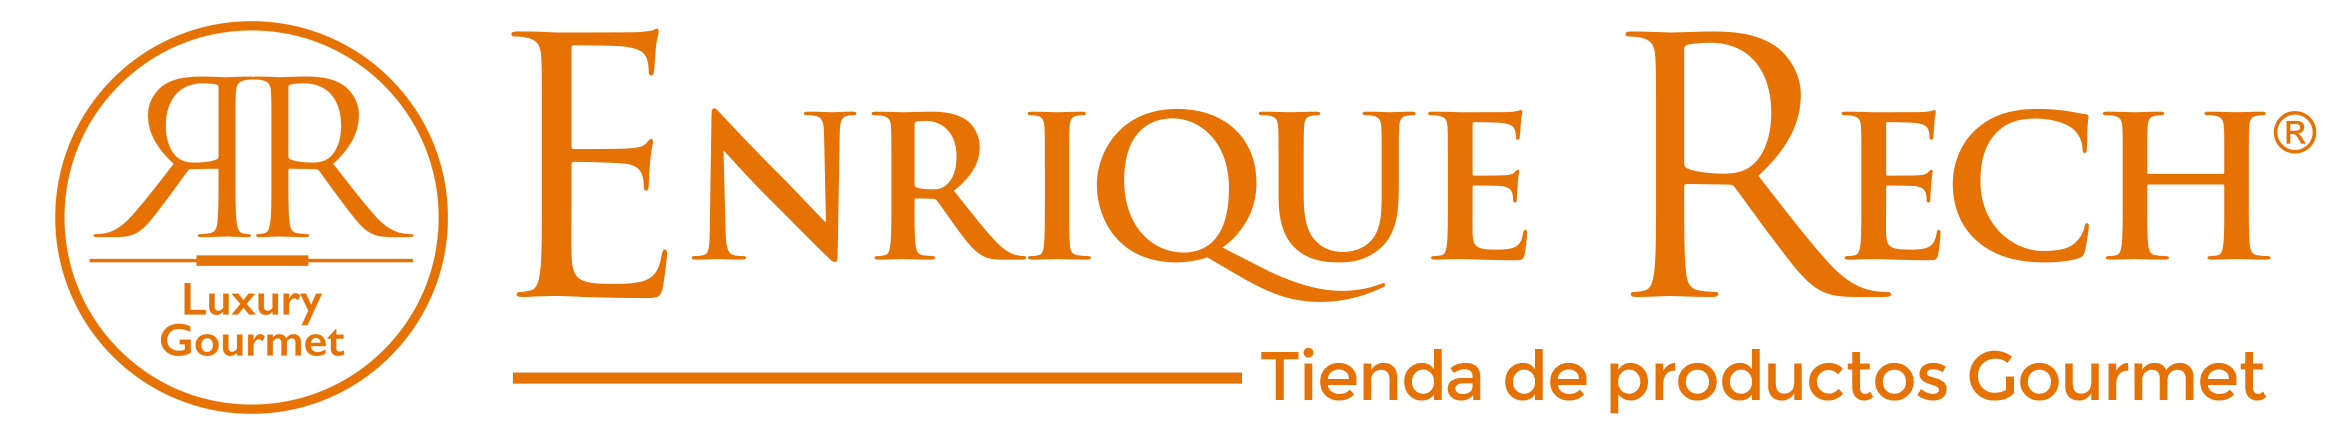 Enrique Rech logotipo